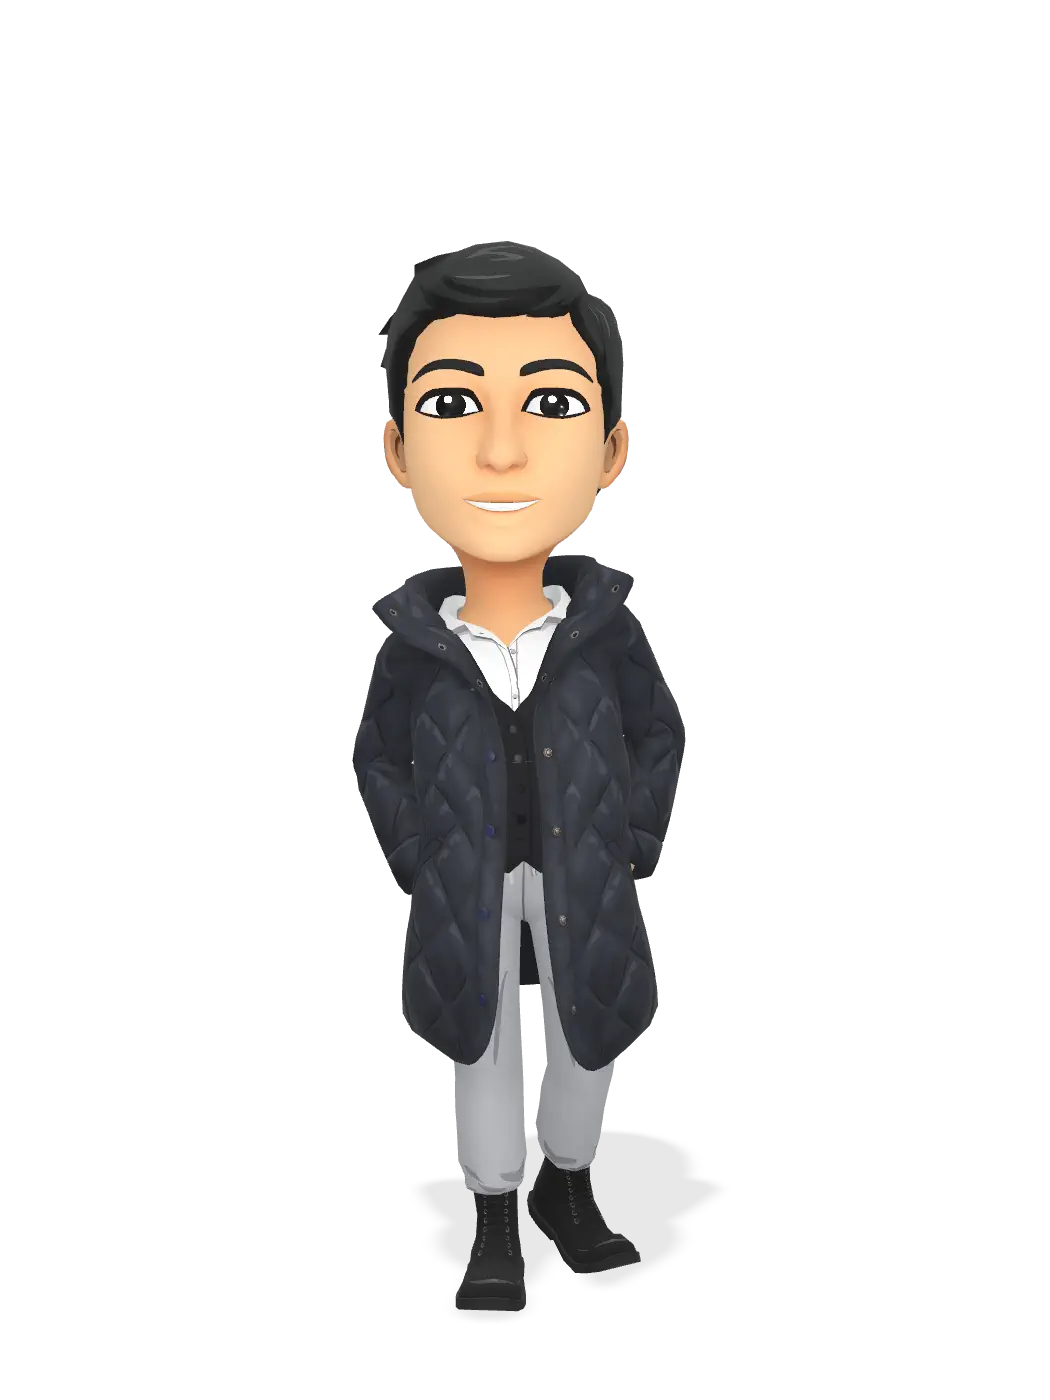 3D Bitmoji for bintangfajarj avatar